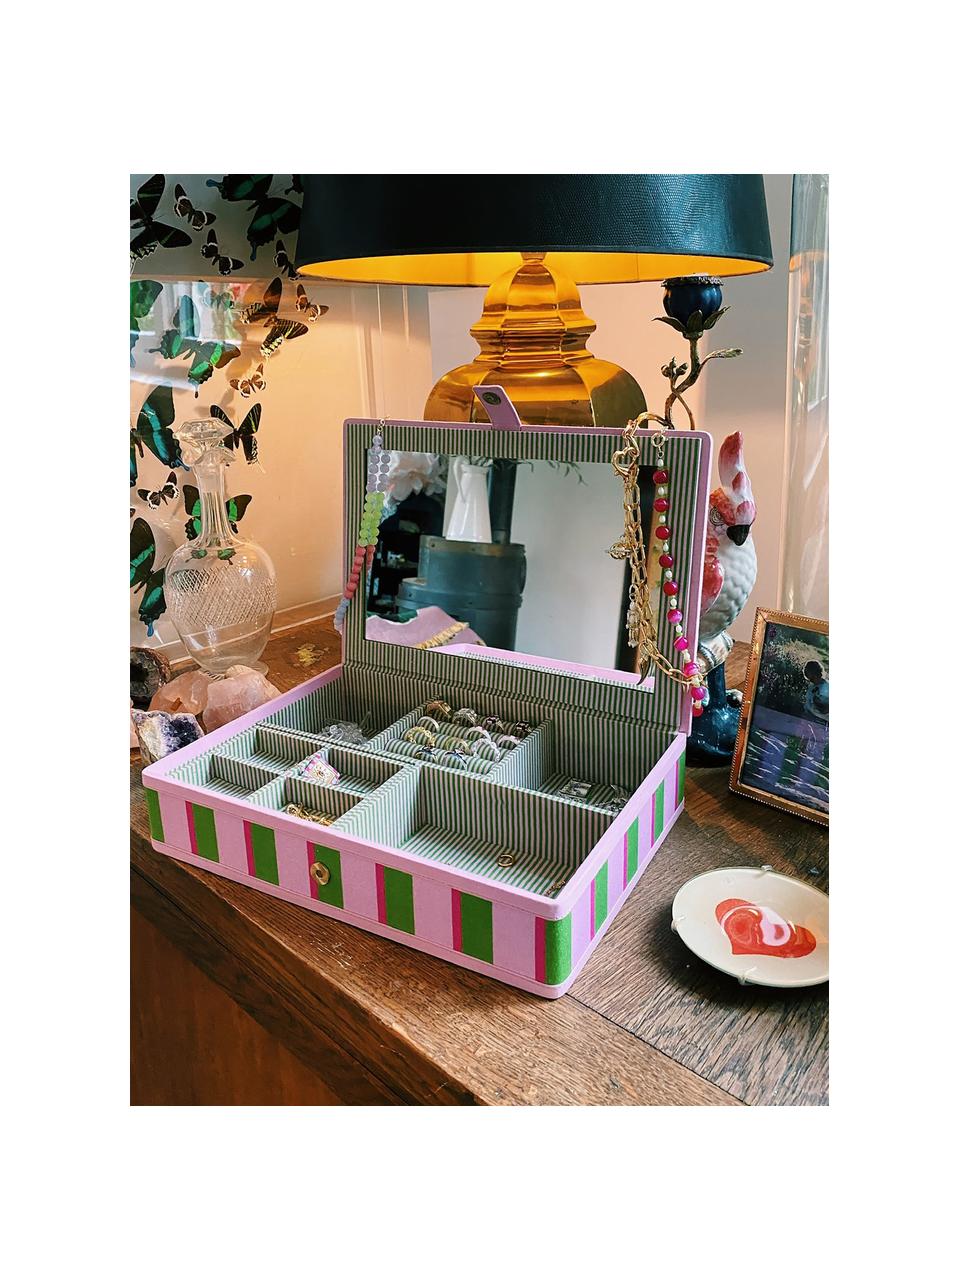 Šperkovnice Evergreen, Bavlna, dřevovláknitá deska střední hustoty (MDF), zrcadlové sklo, Magnet, Růžová, zelená, Š 32 cm, H 22 cm